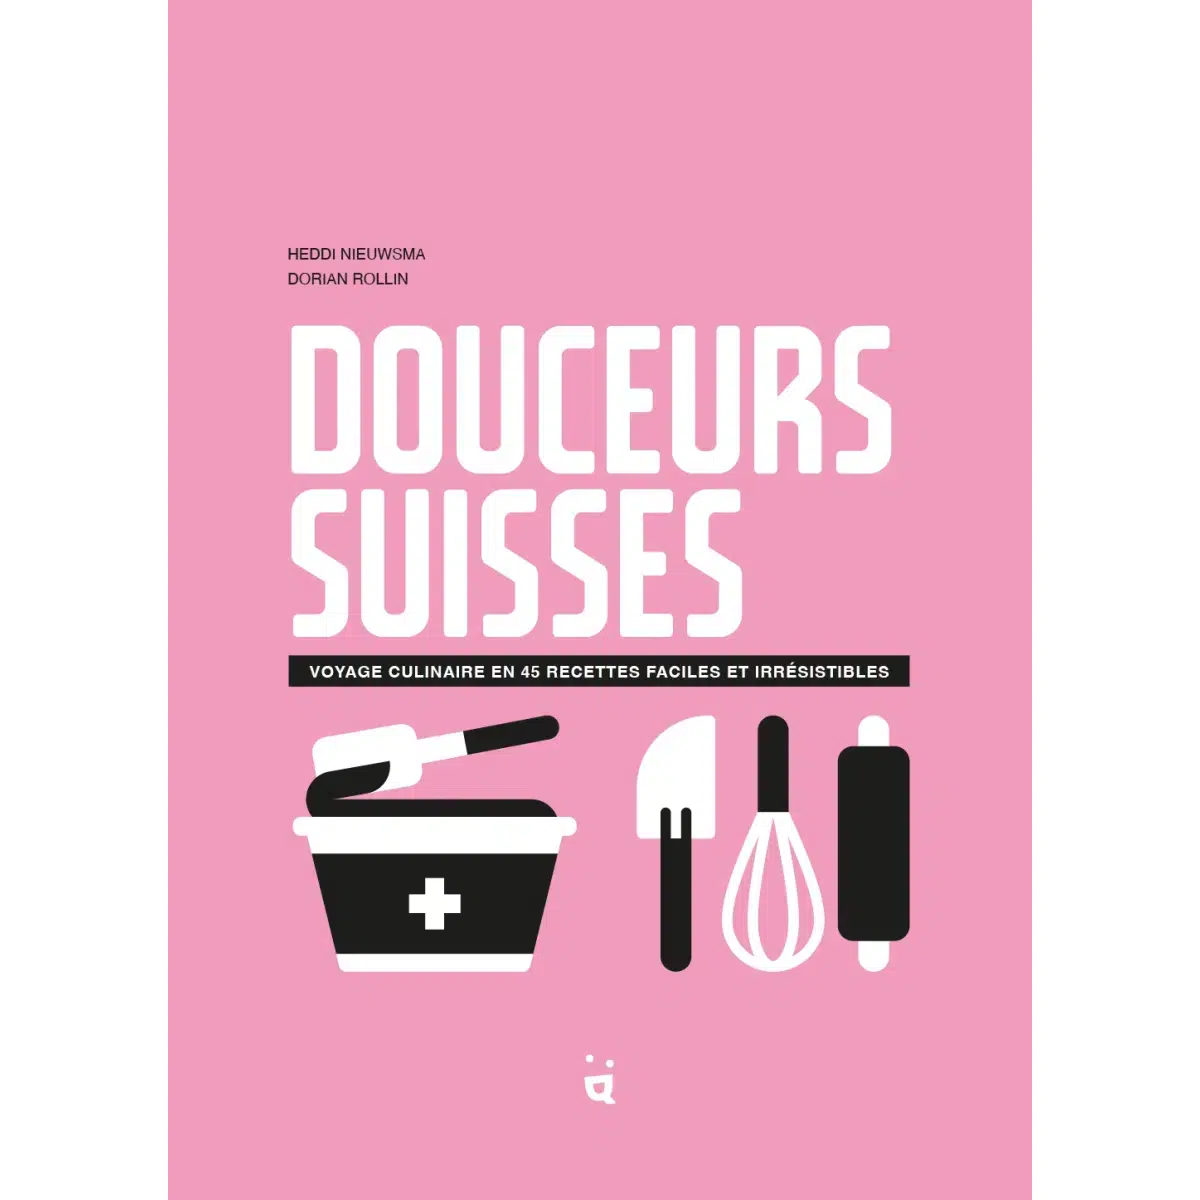 Livre Douceurs Suisses en français Helvetiq